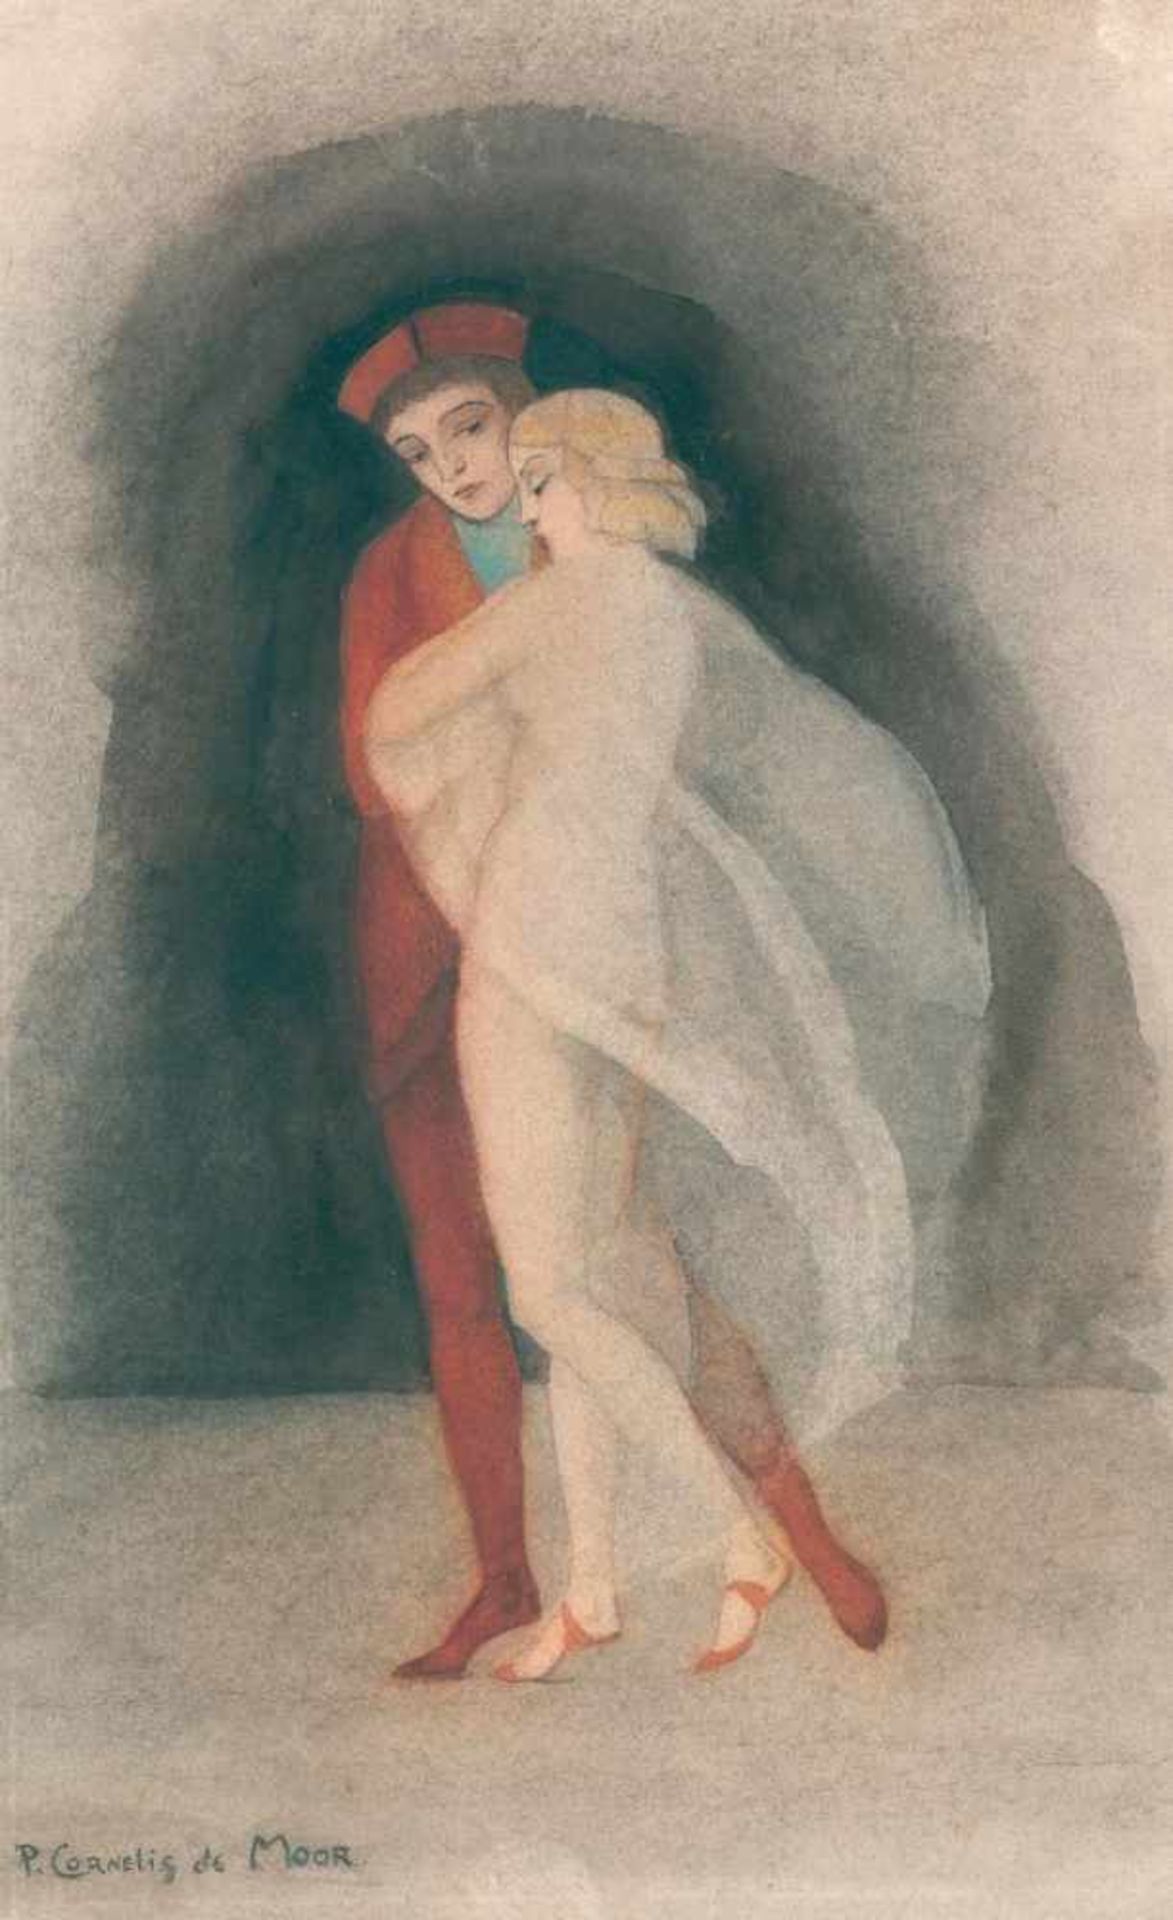 Moor, Pieter Cornelis de(1866 Rotterdam - St. James/New York 1953). Tanzendes Paar (Dante und